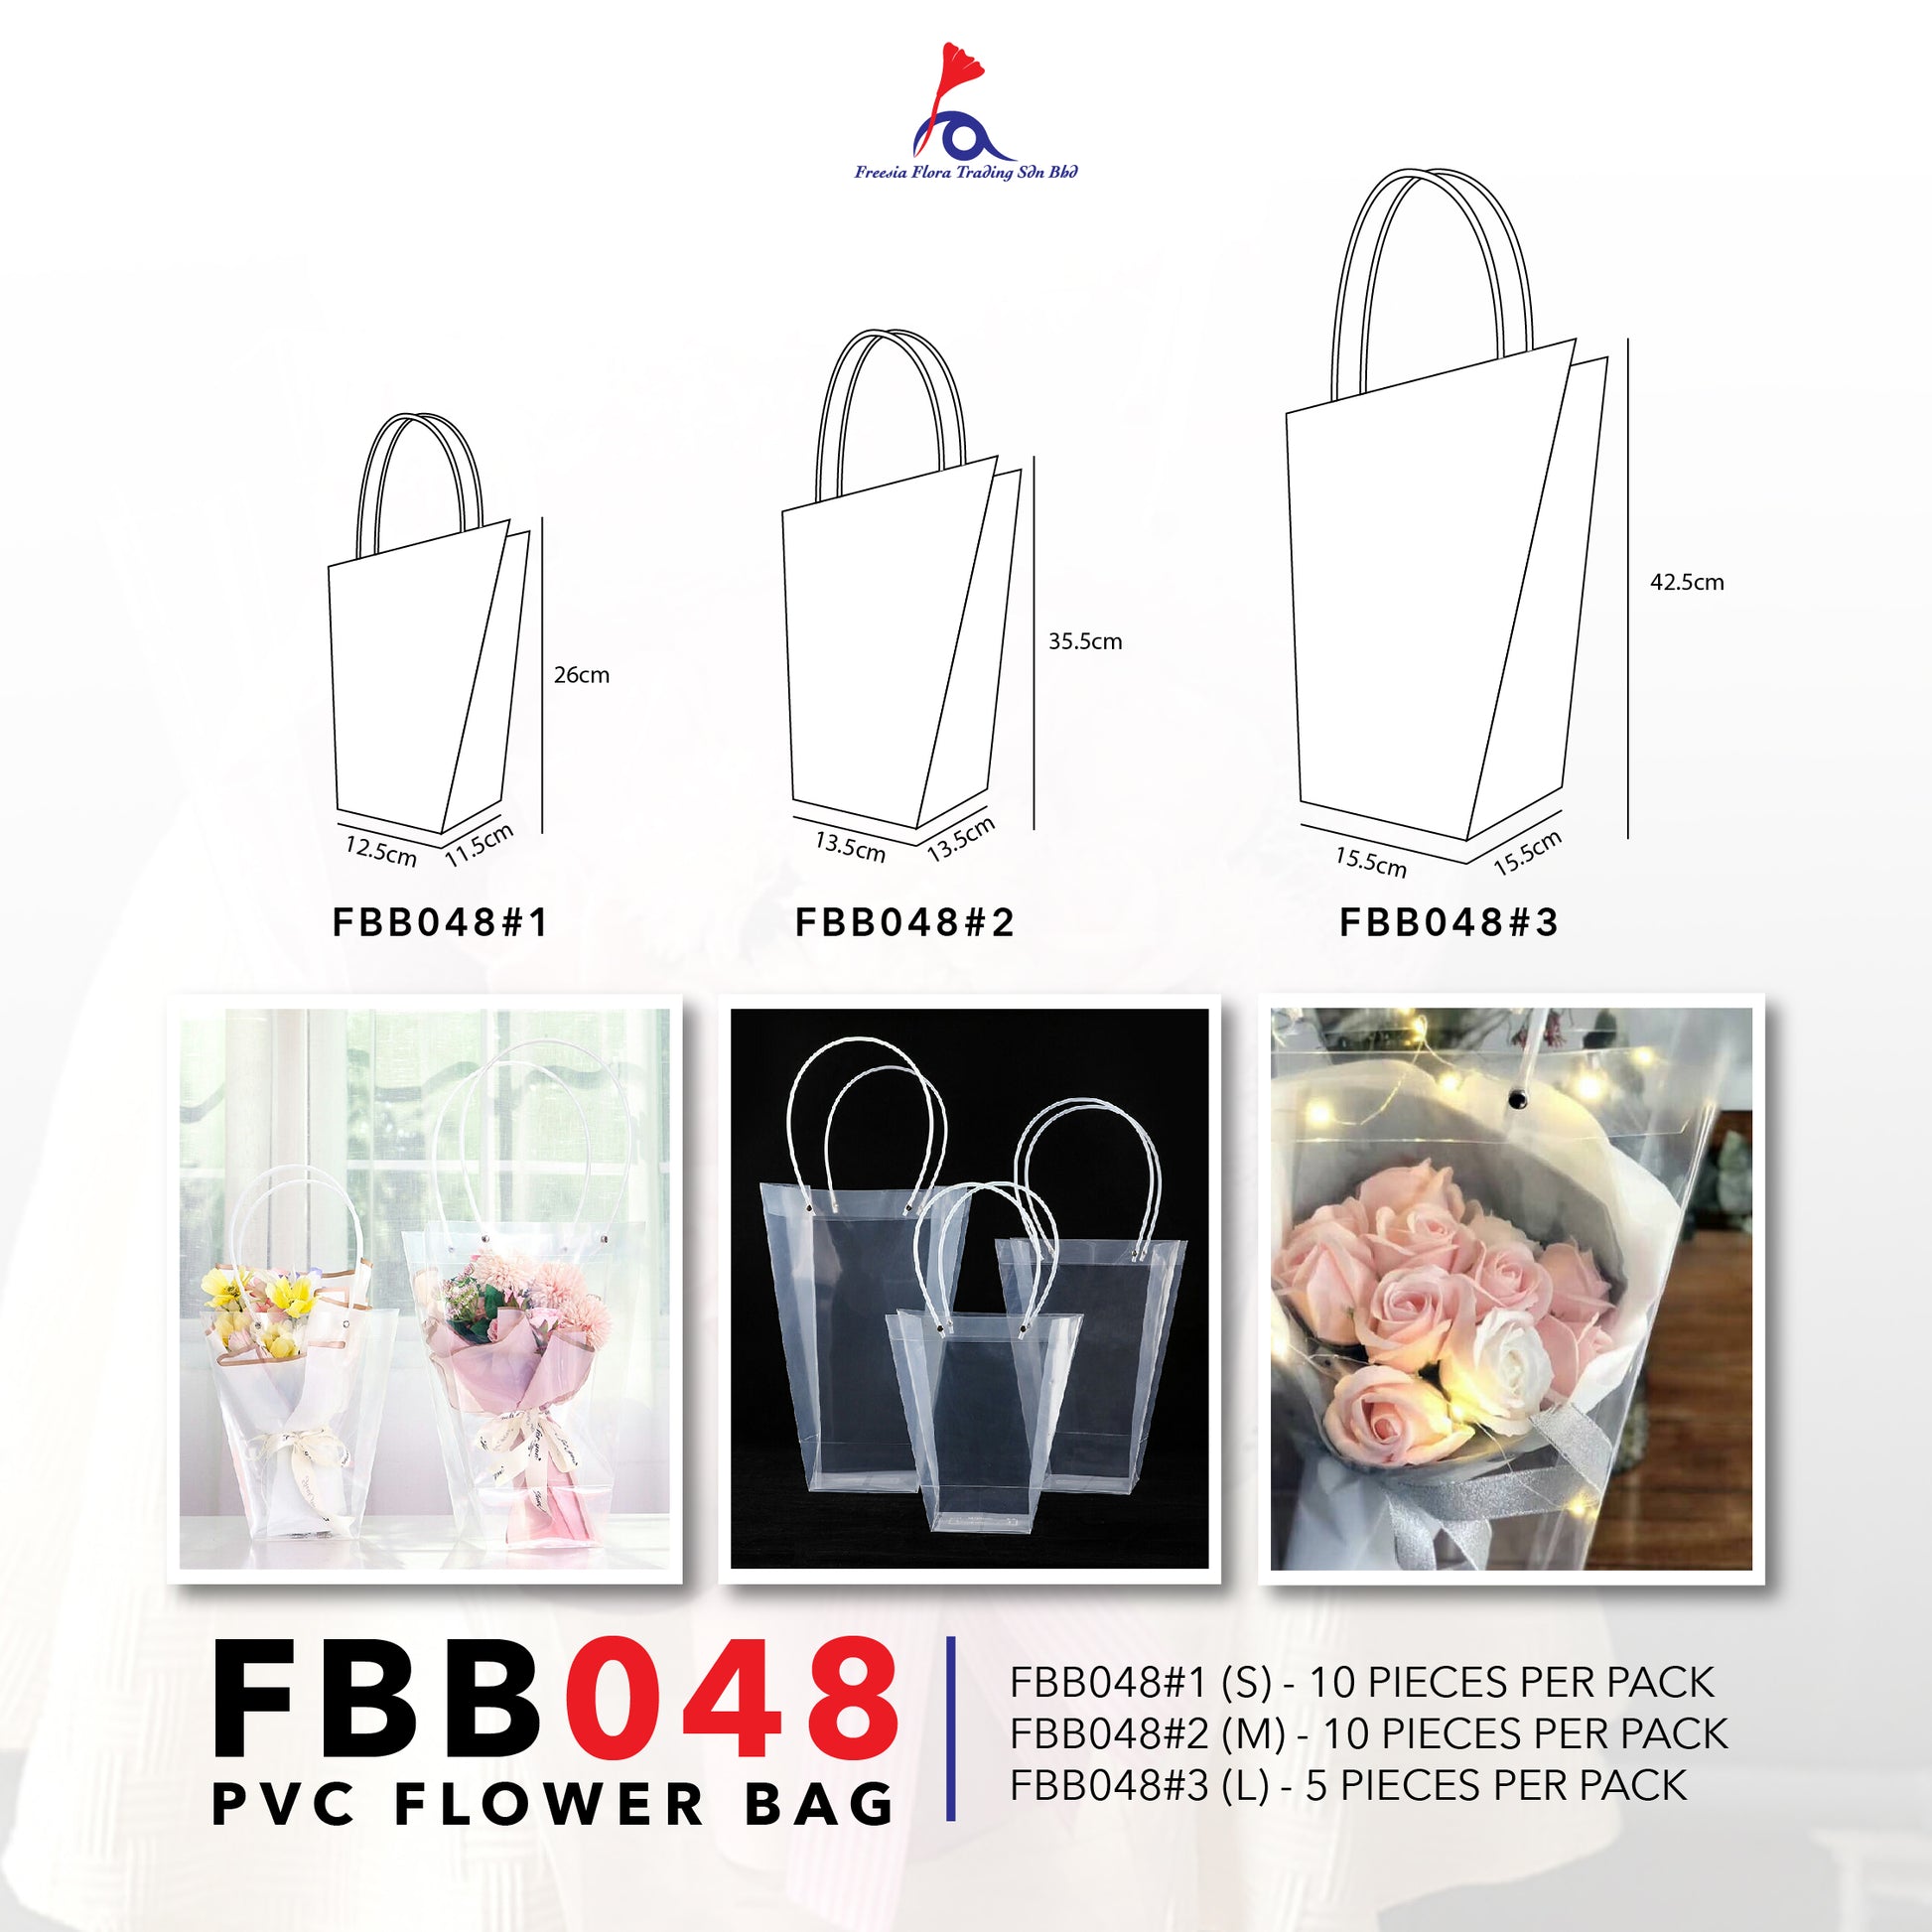 FBB048 PVC FLOWER BAG - Freesia